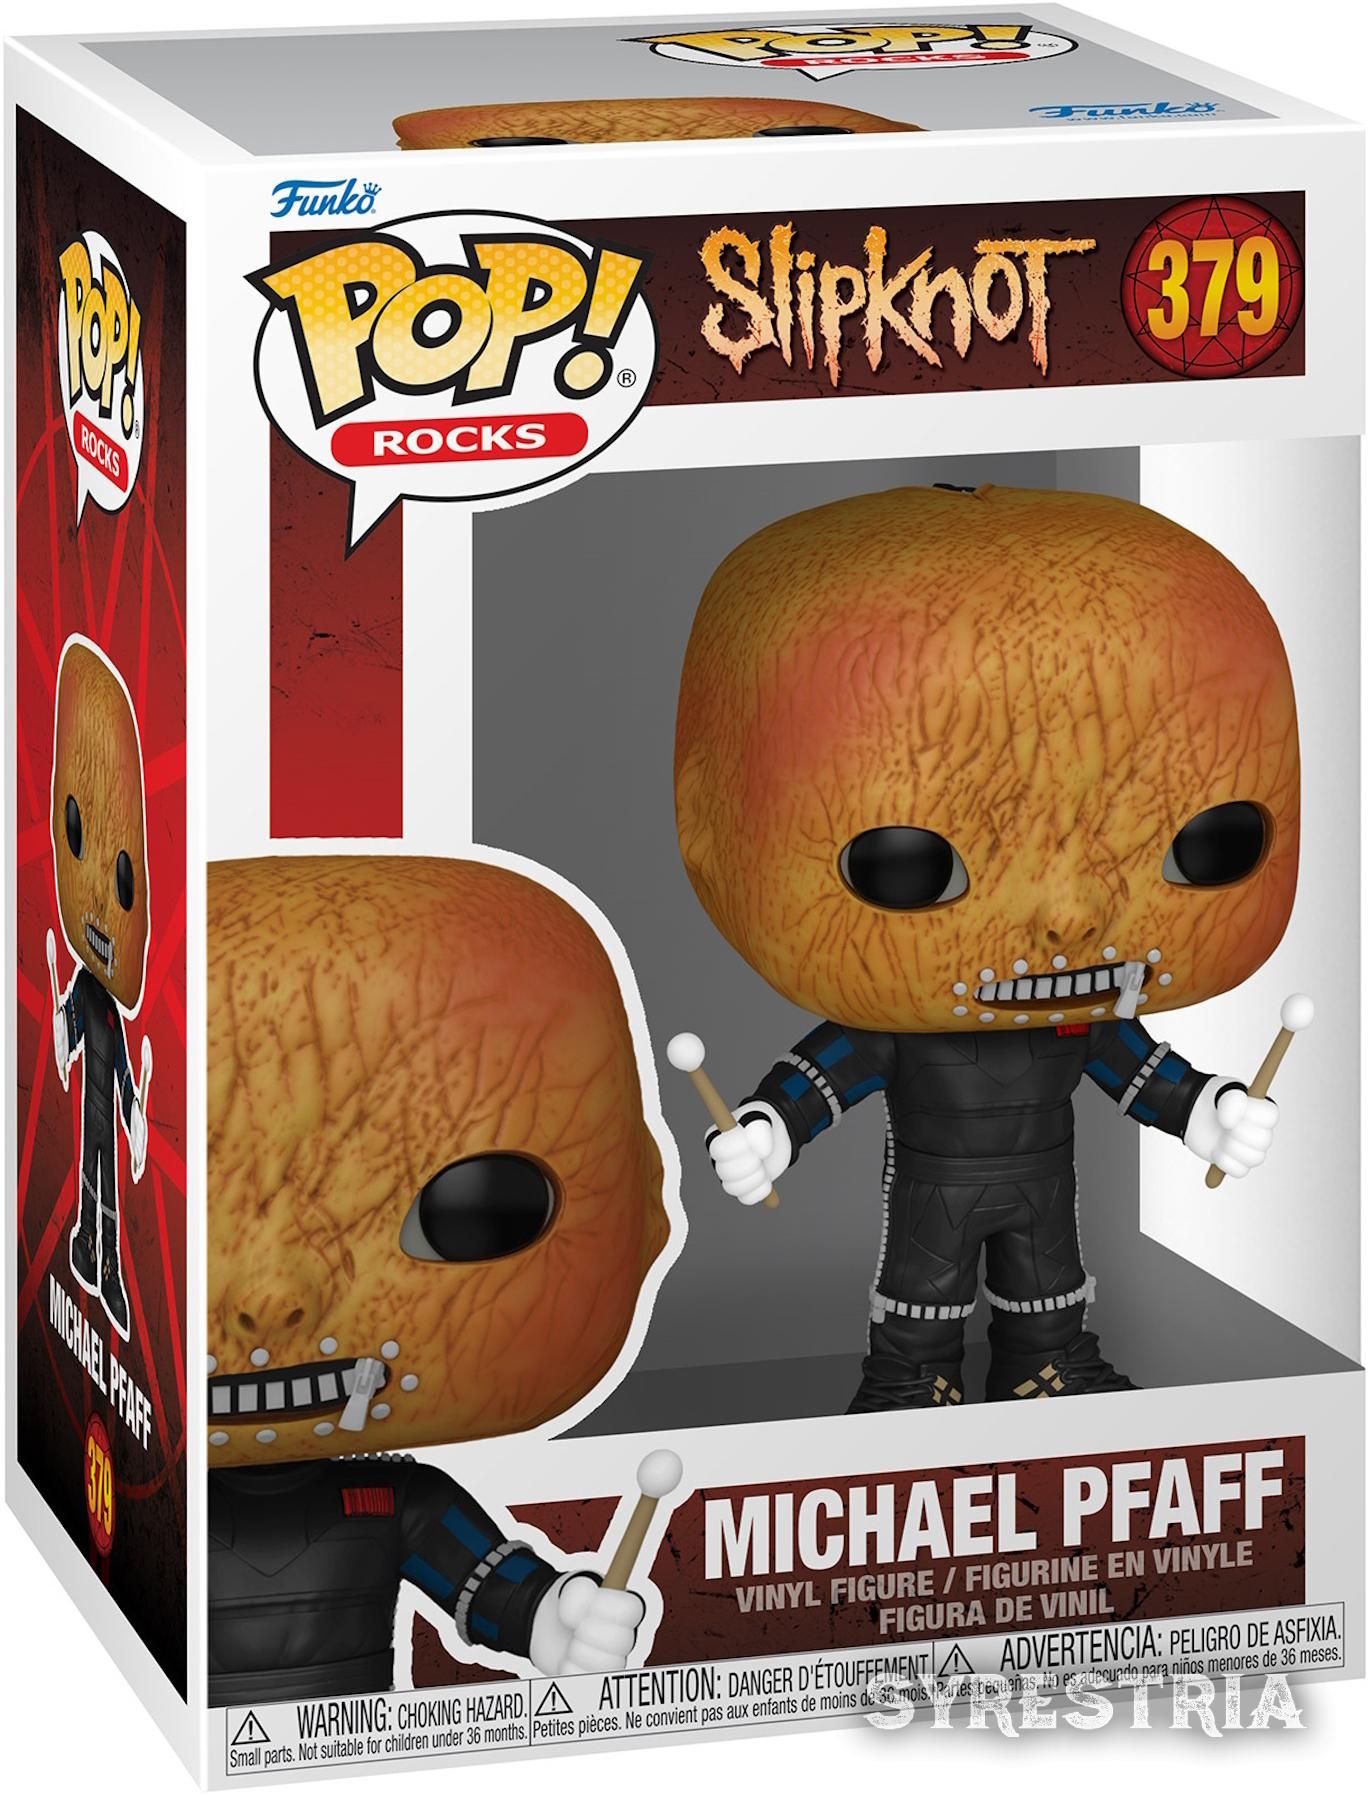 Slipknot - Michael Pfaff 379  - Funko Pop! Vinyl Figur